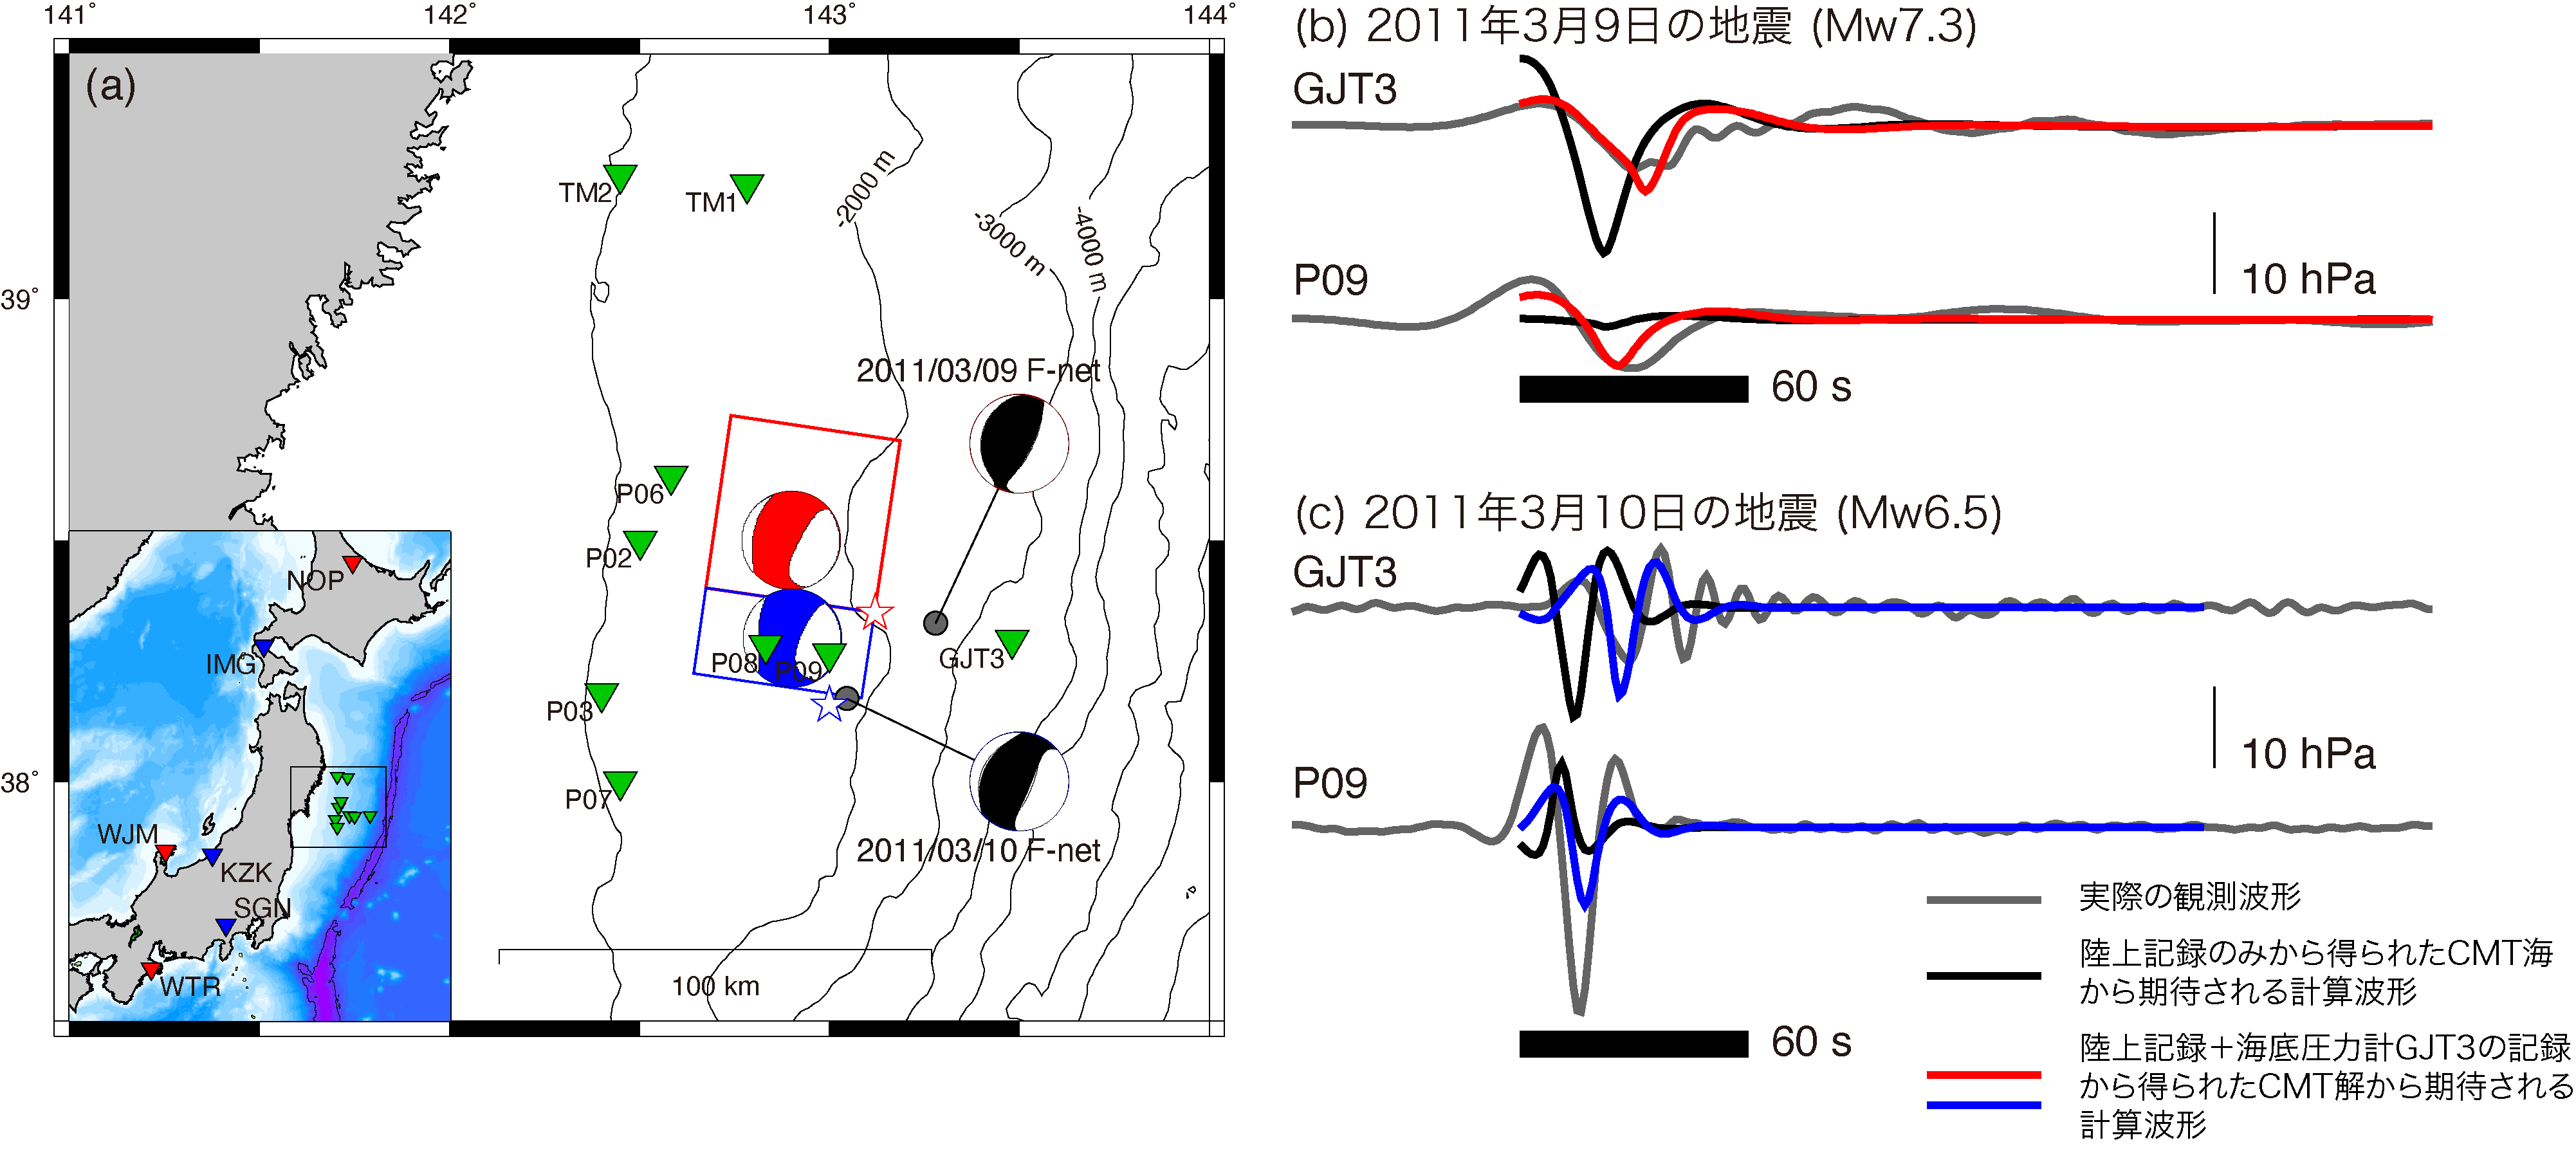 (a) 本研究で対象とした2011年3月9日 (Mw 7.3，赤星)・10日の地震 (Mw 6.5，青星) の震央と，津波波形解析から得られた各イベント破壊域 (矩形)．海底圧力計の位置を緑の三角で，各イベントの解析に用いたF-netの陸上地震計を，対応する色の三角で示す．F-net MT解を灰色で，本研究で推定したCMT解を赤 (9日)，青 (10日) で示した．(b) 3月9日の地震における動的圧力変動波形の比較．黒は観測，灰色はF-net MT解から計算した波形，赤は推定されたCMT解から計算した波形．観測点GJT3はCMT解の推定に使用したが，P09はCMT解推定には使用していない． (c) 3月10日の地震における動的圧力変動波形の比較．図の説明は(b)と同様．